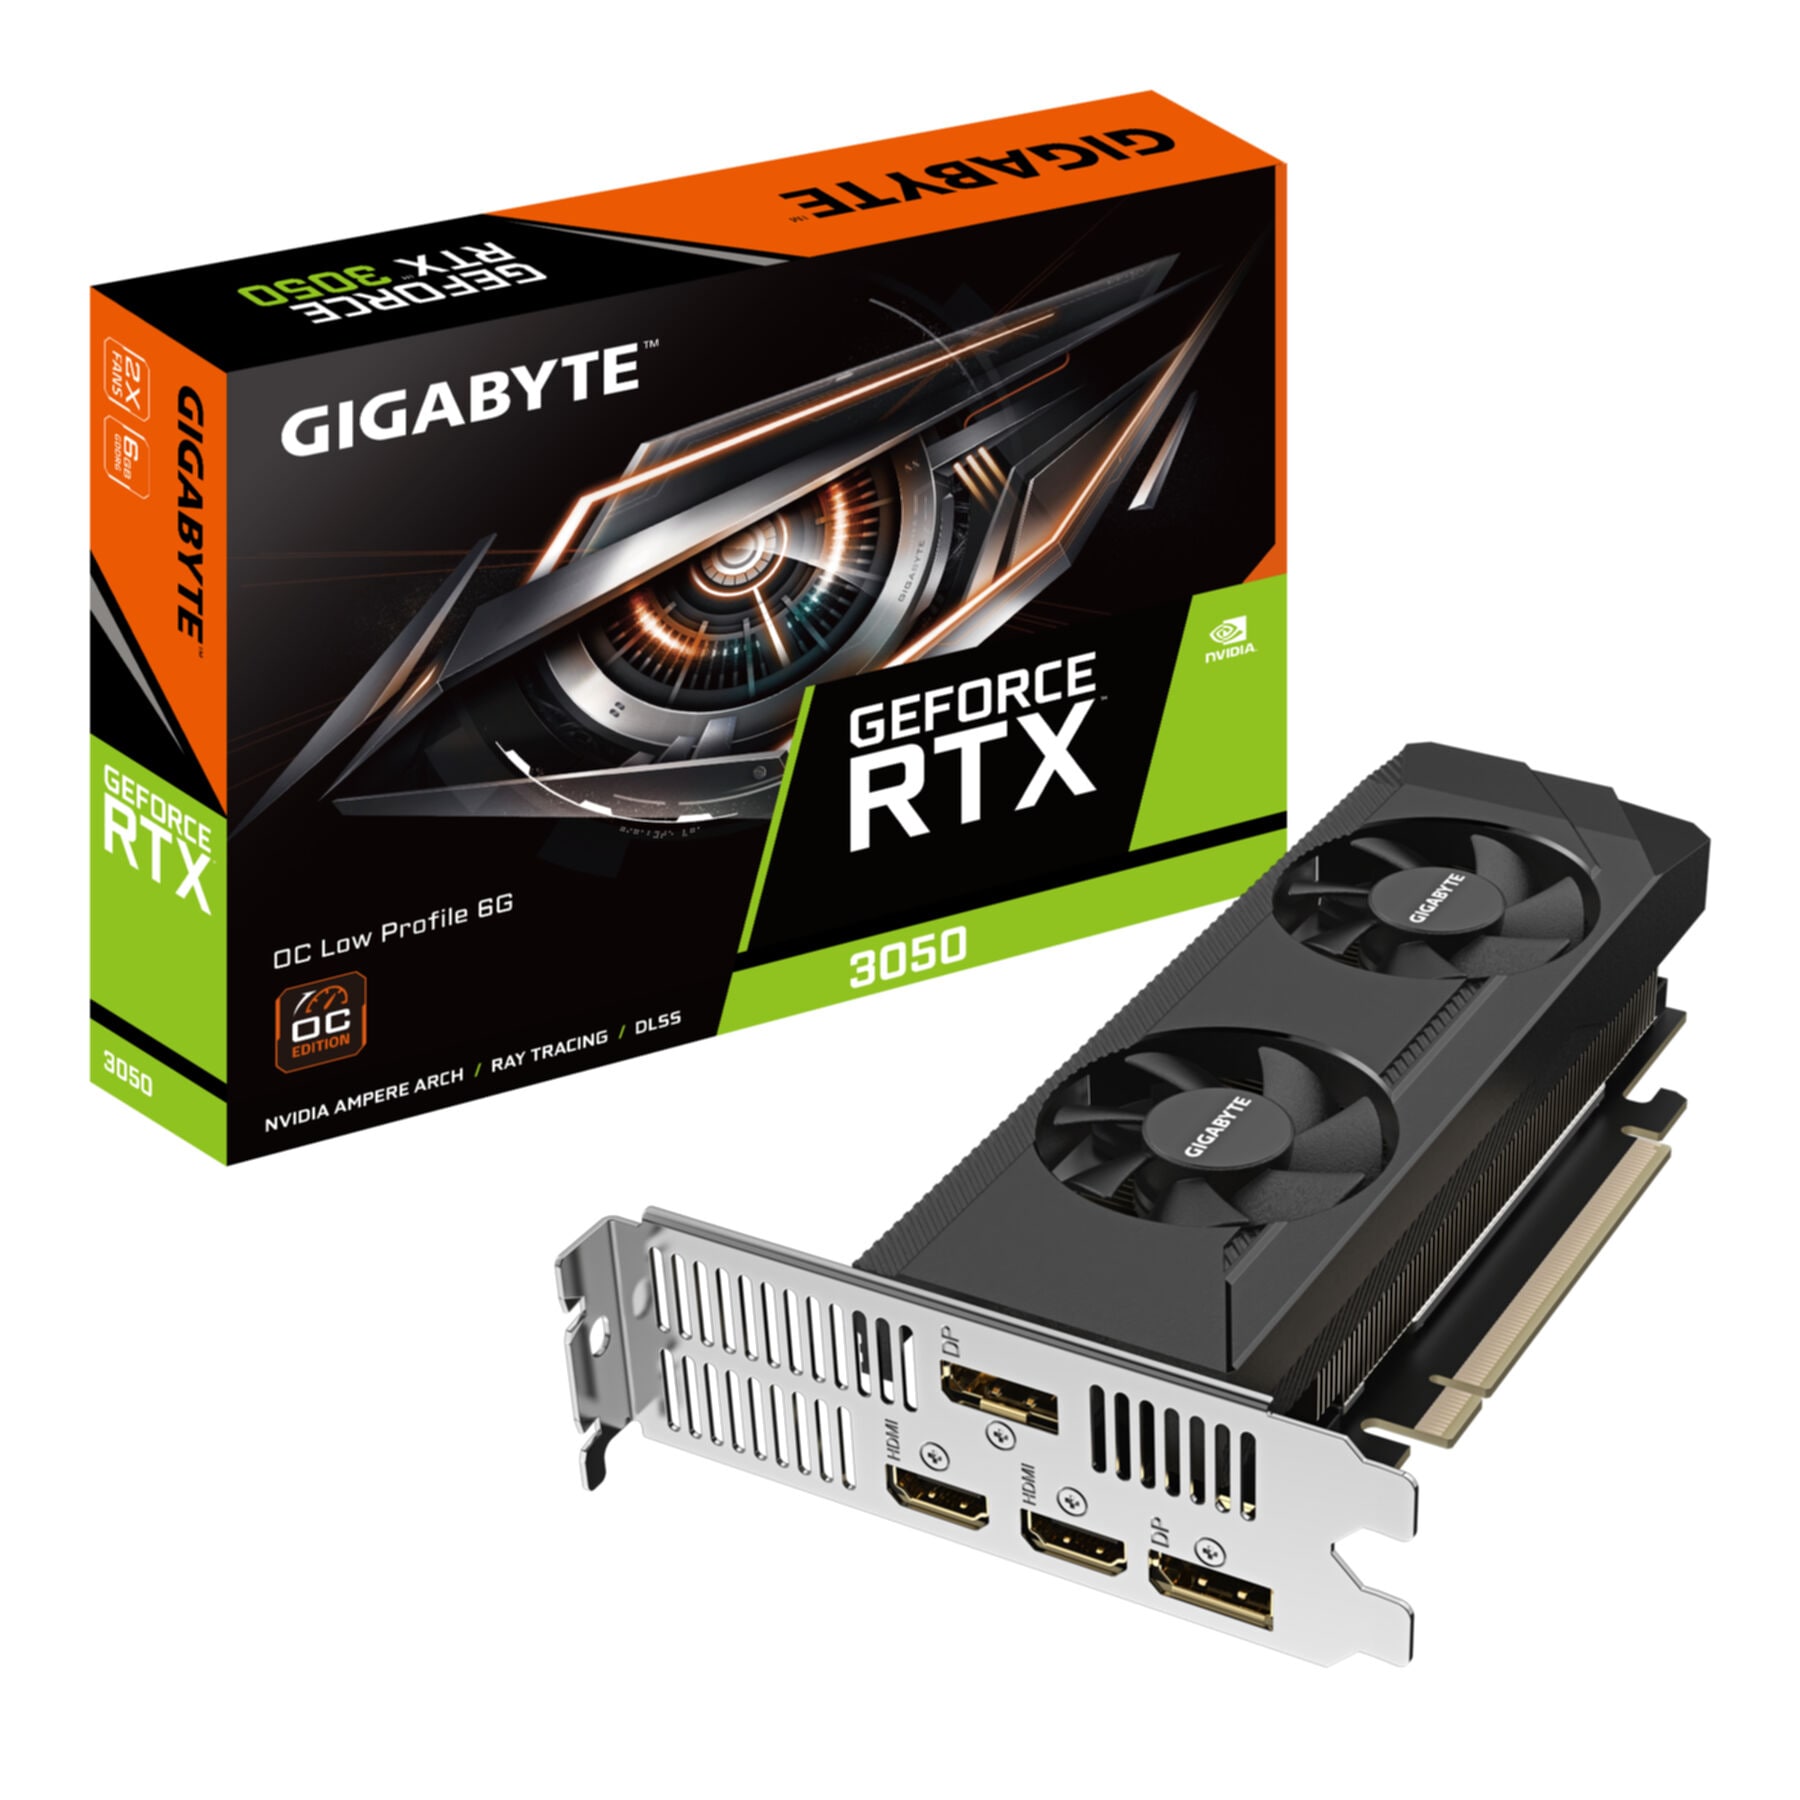 Gigabyte Grafikkarte »GeForce RTX 3050 OC Low Profile 6G«